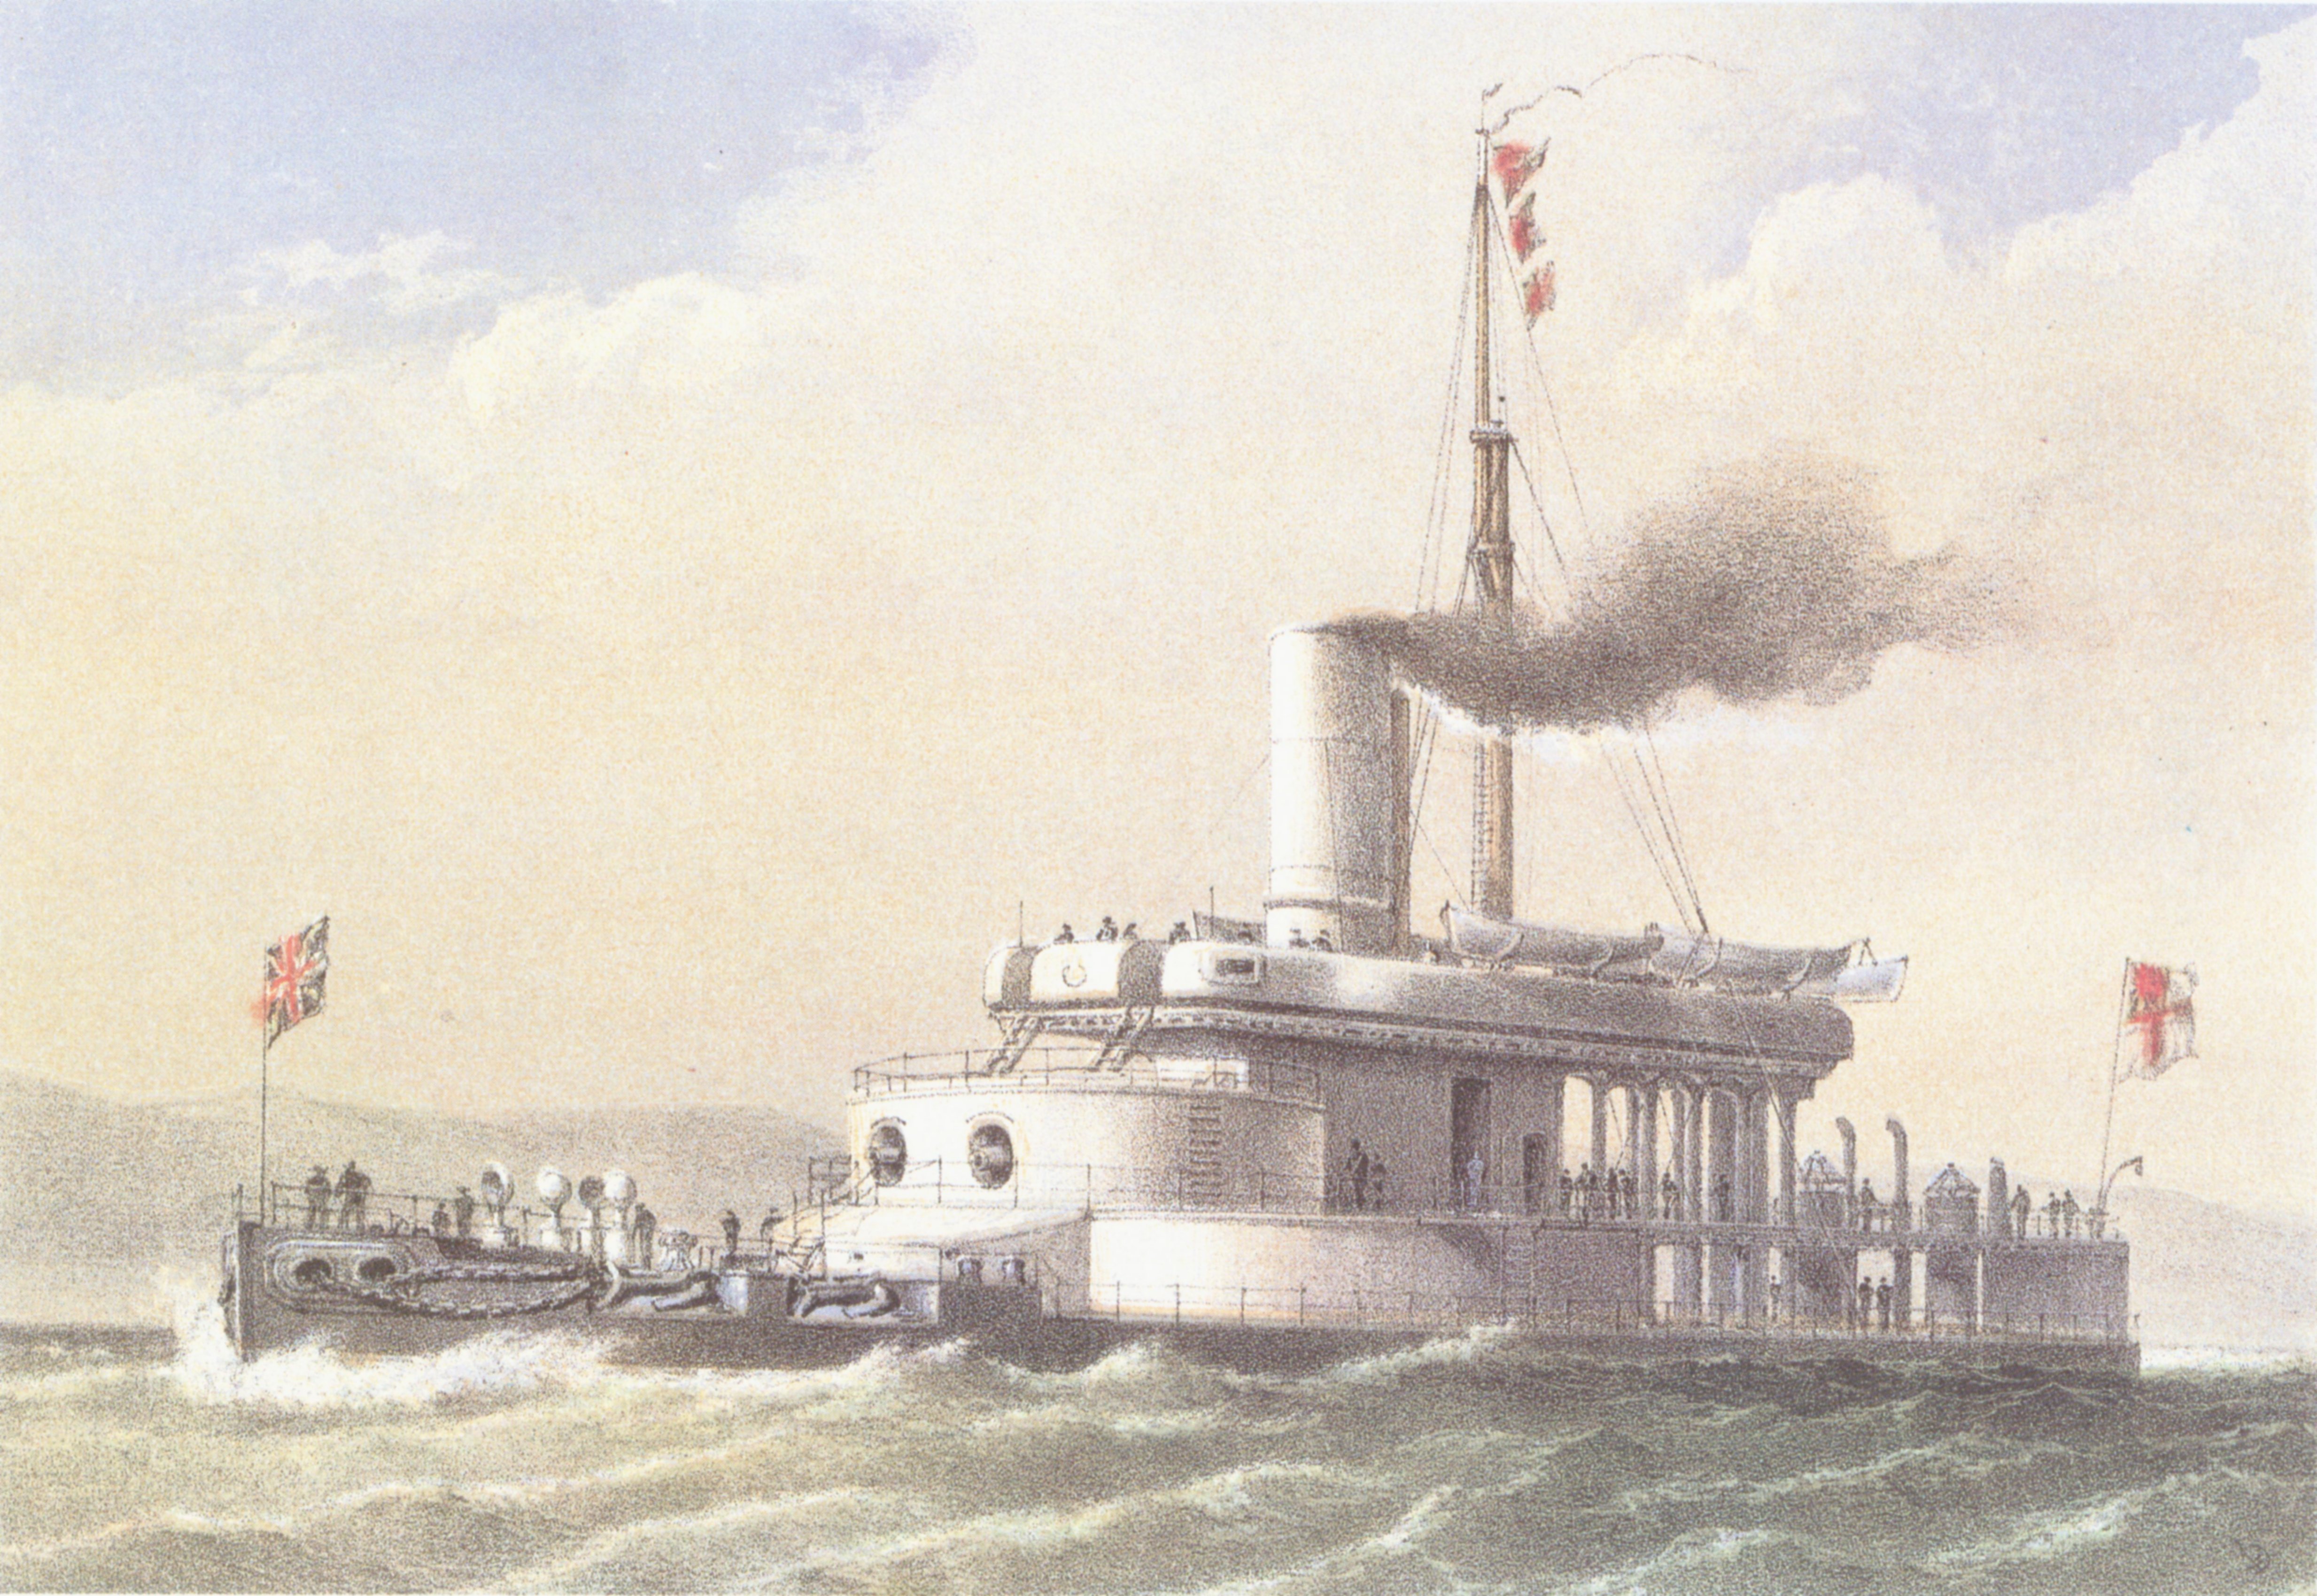 HMS_Glatton_(1871)_William_Frederick_Mitchell.jpg